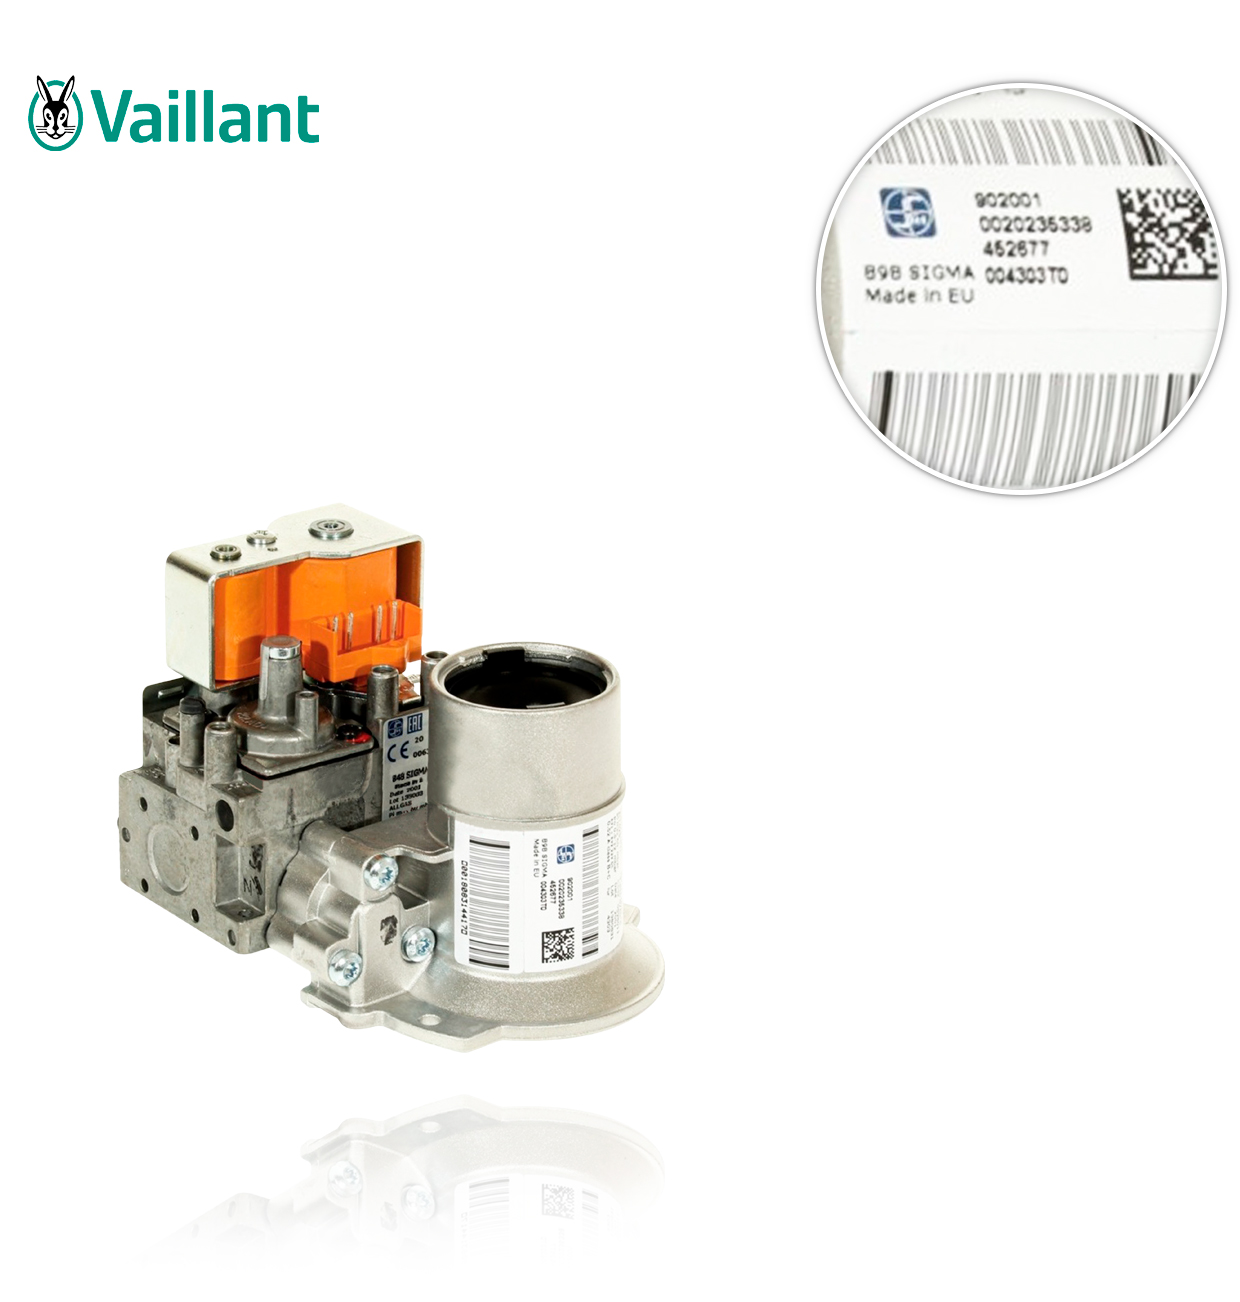 VALVULA GAS VMW 236/5-5 R6 VAILLANT 0020240266